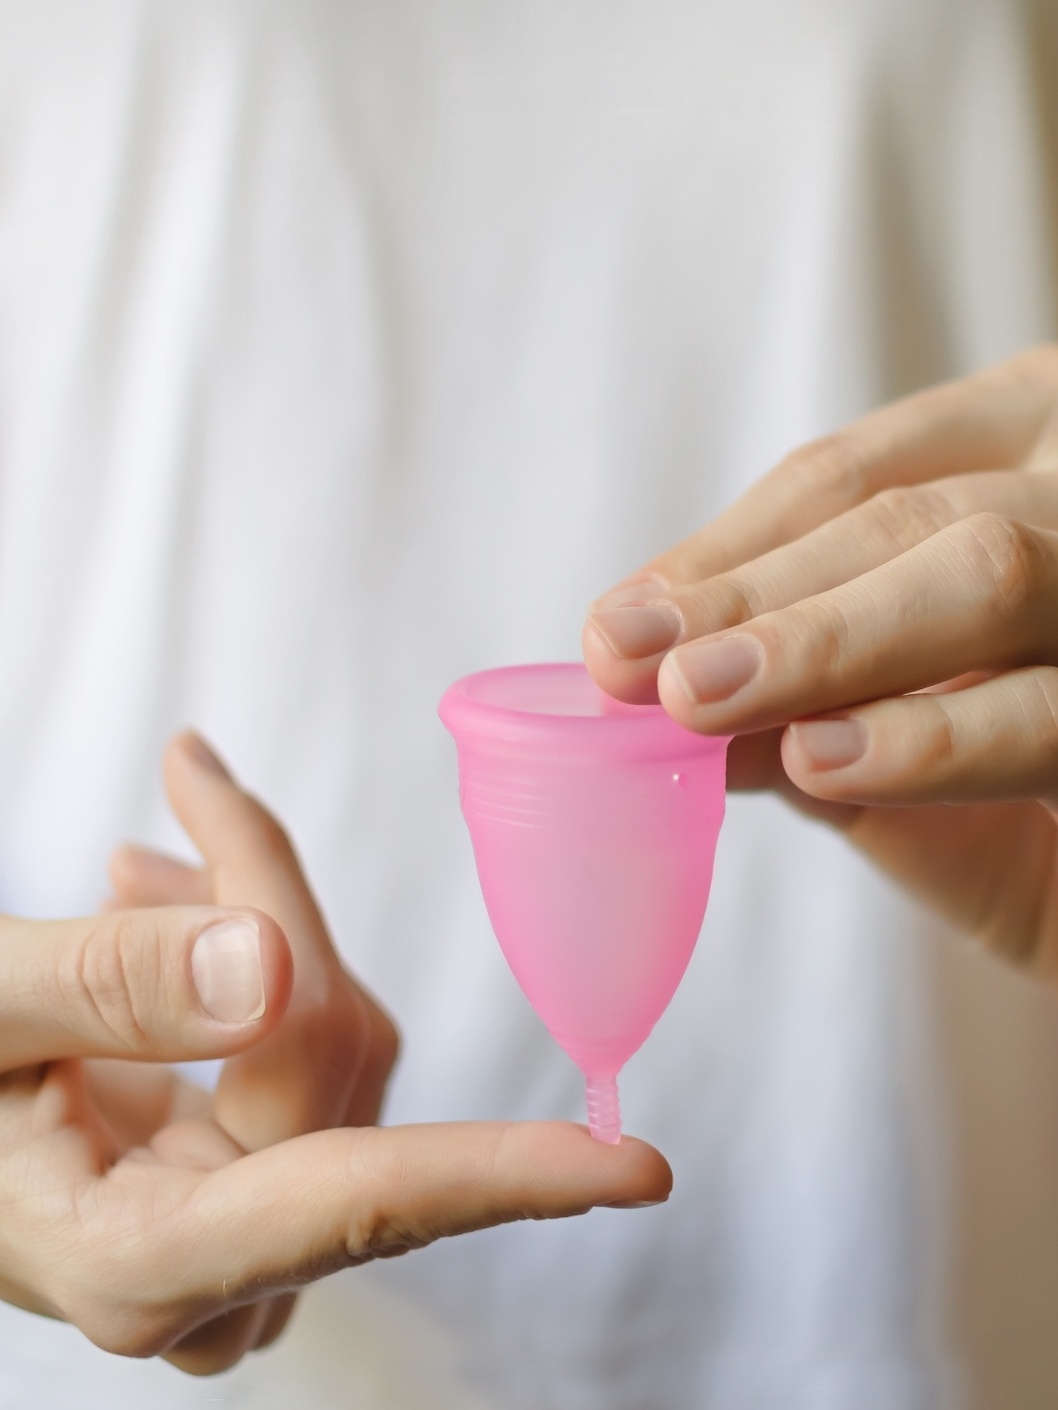 Coletor menstrual pode ser usado para inseminação caseira; entenda - 26/01/2019 foto